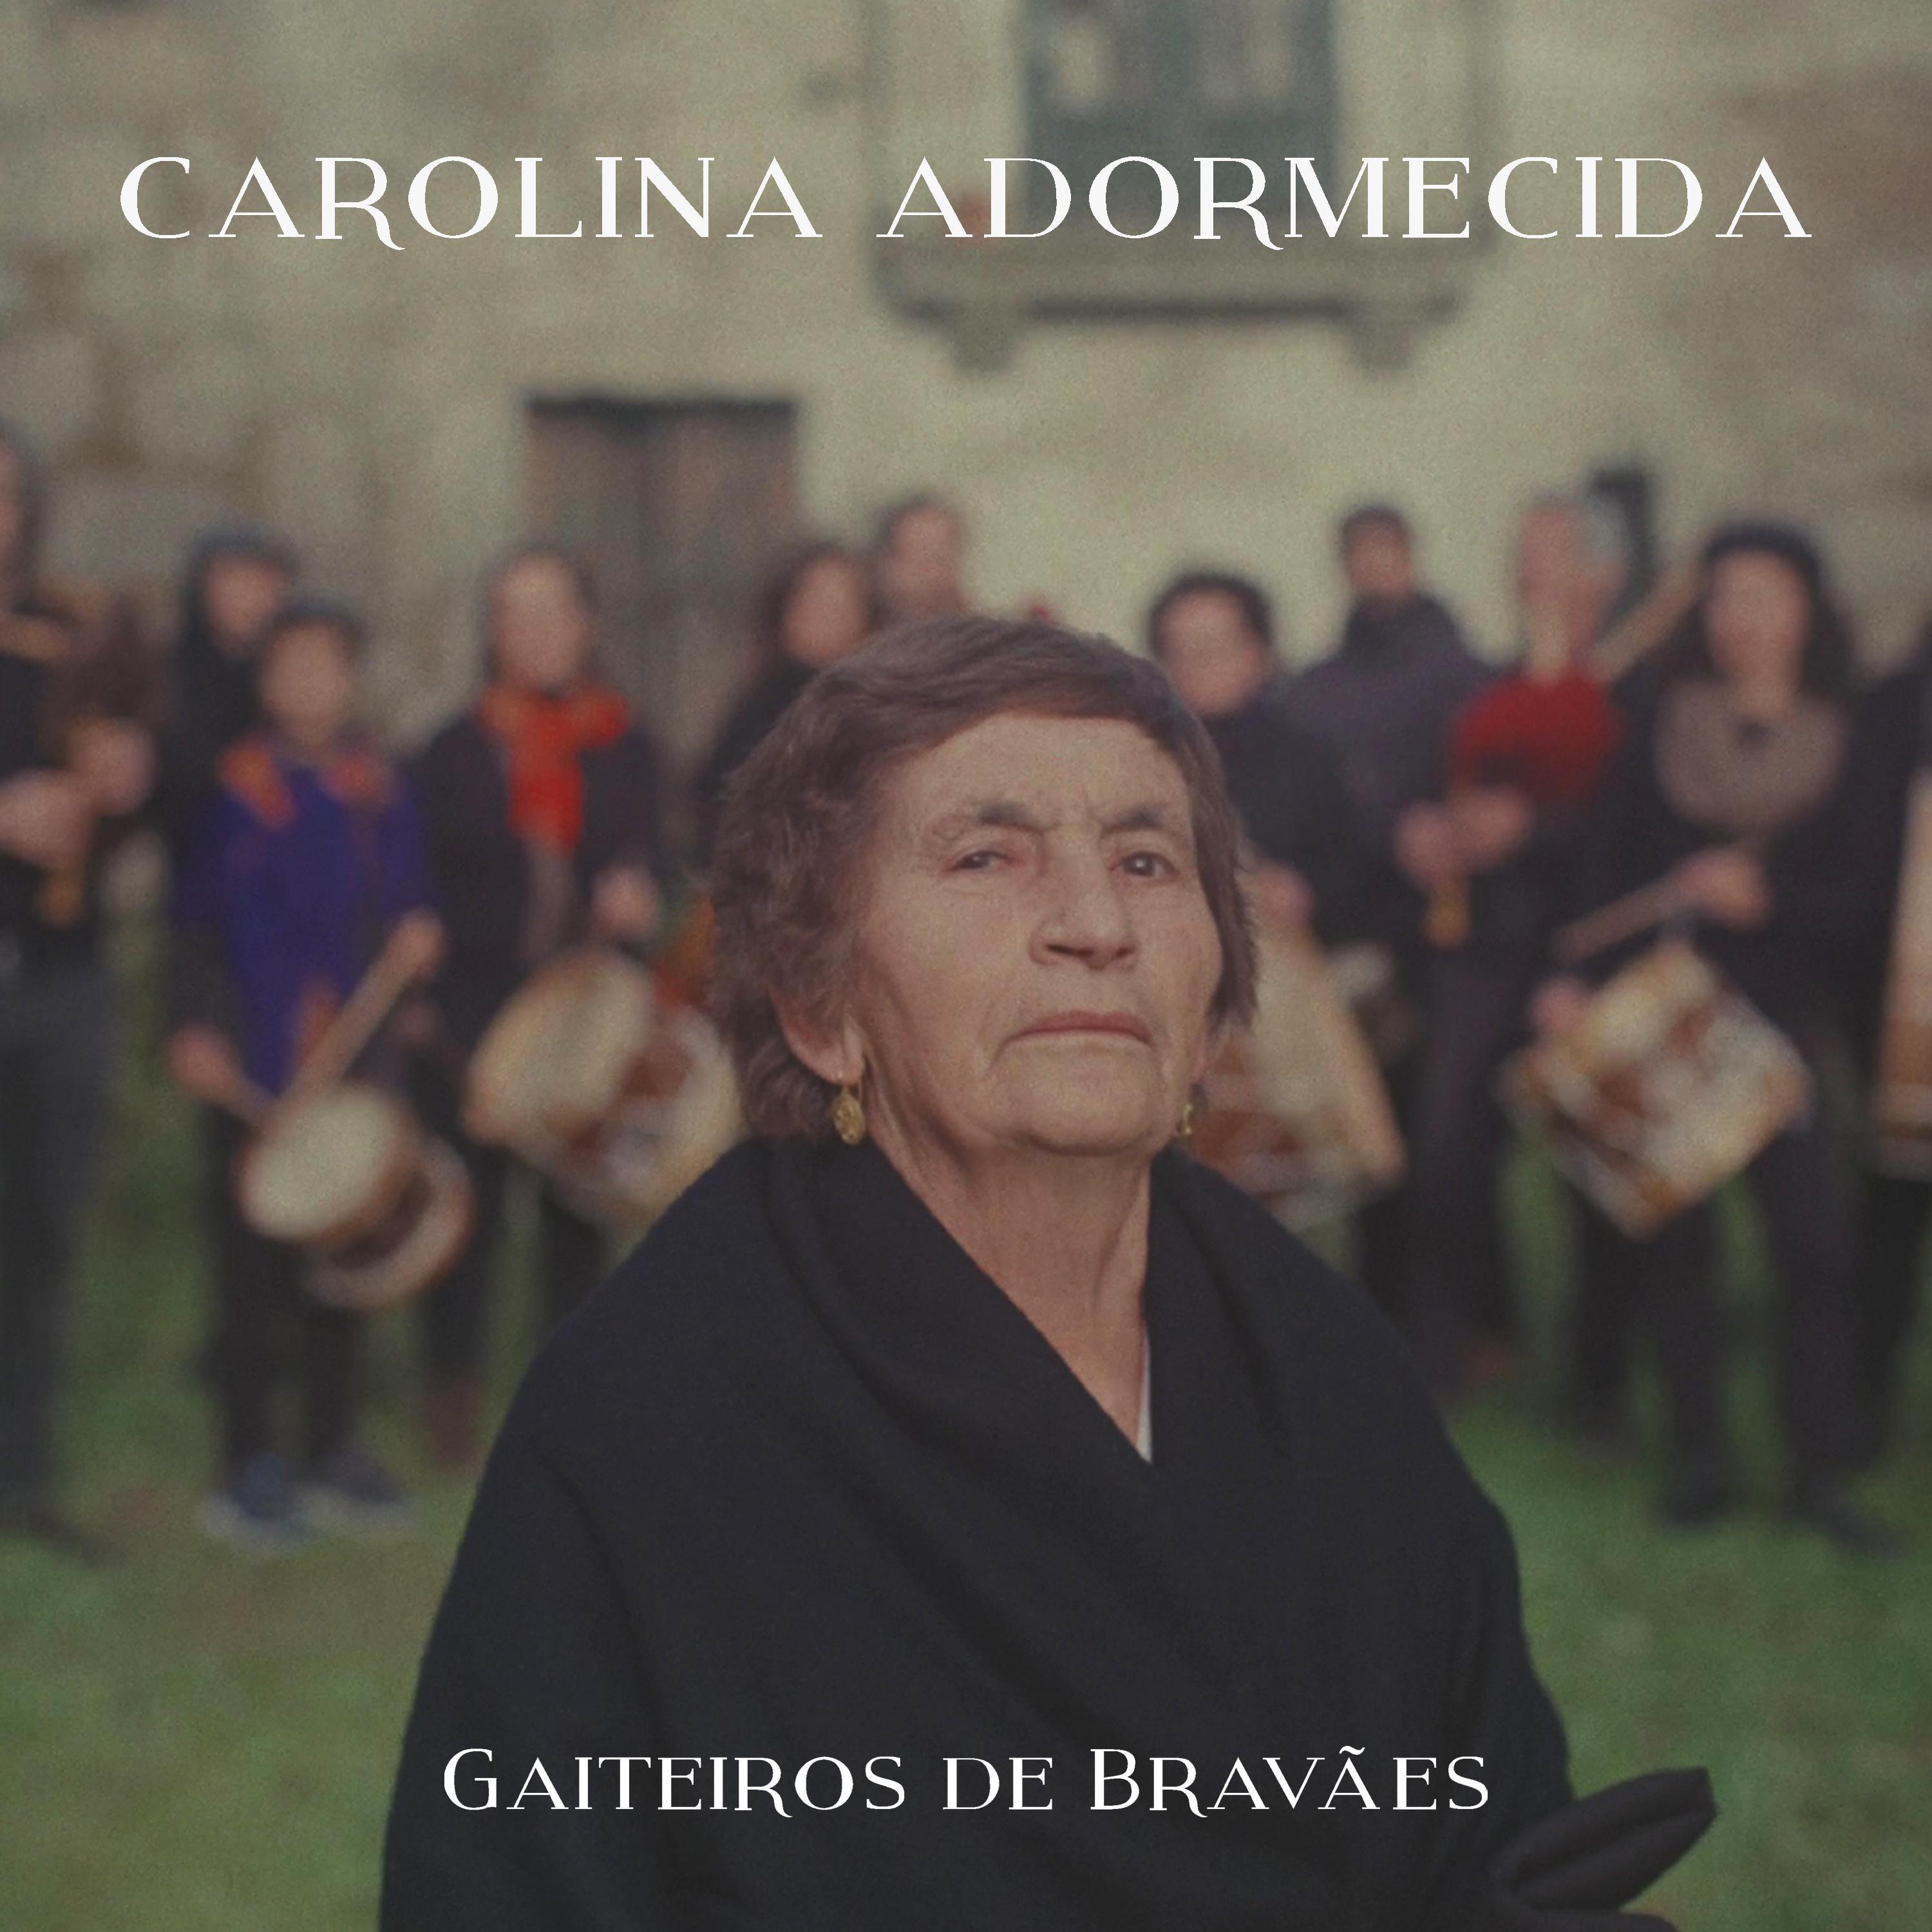 Gaiteiros de Bravães - Carolina Adormecida (feat. Patrícia Costa, Cantadeiras de Bravães & Phole)